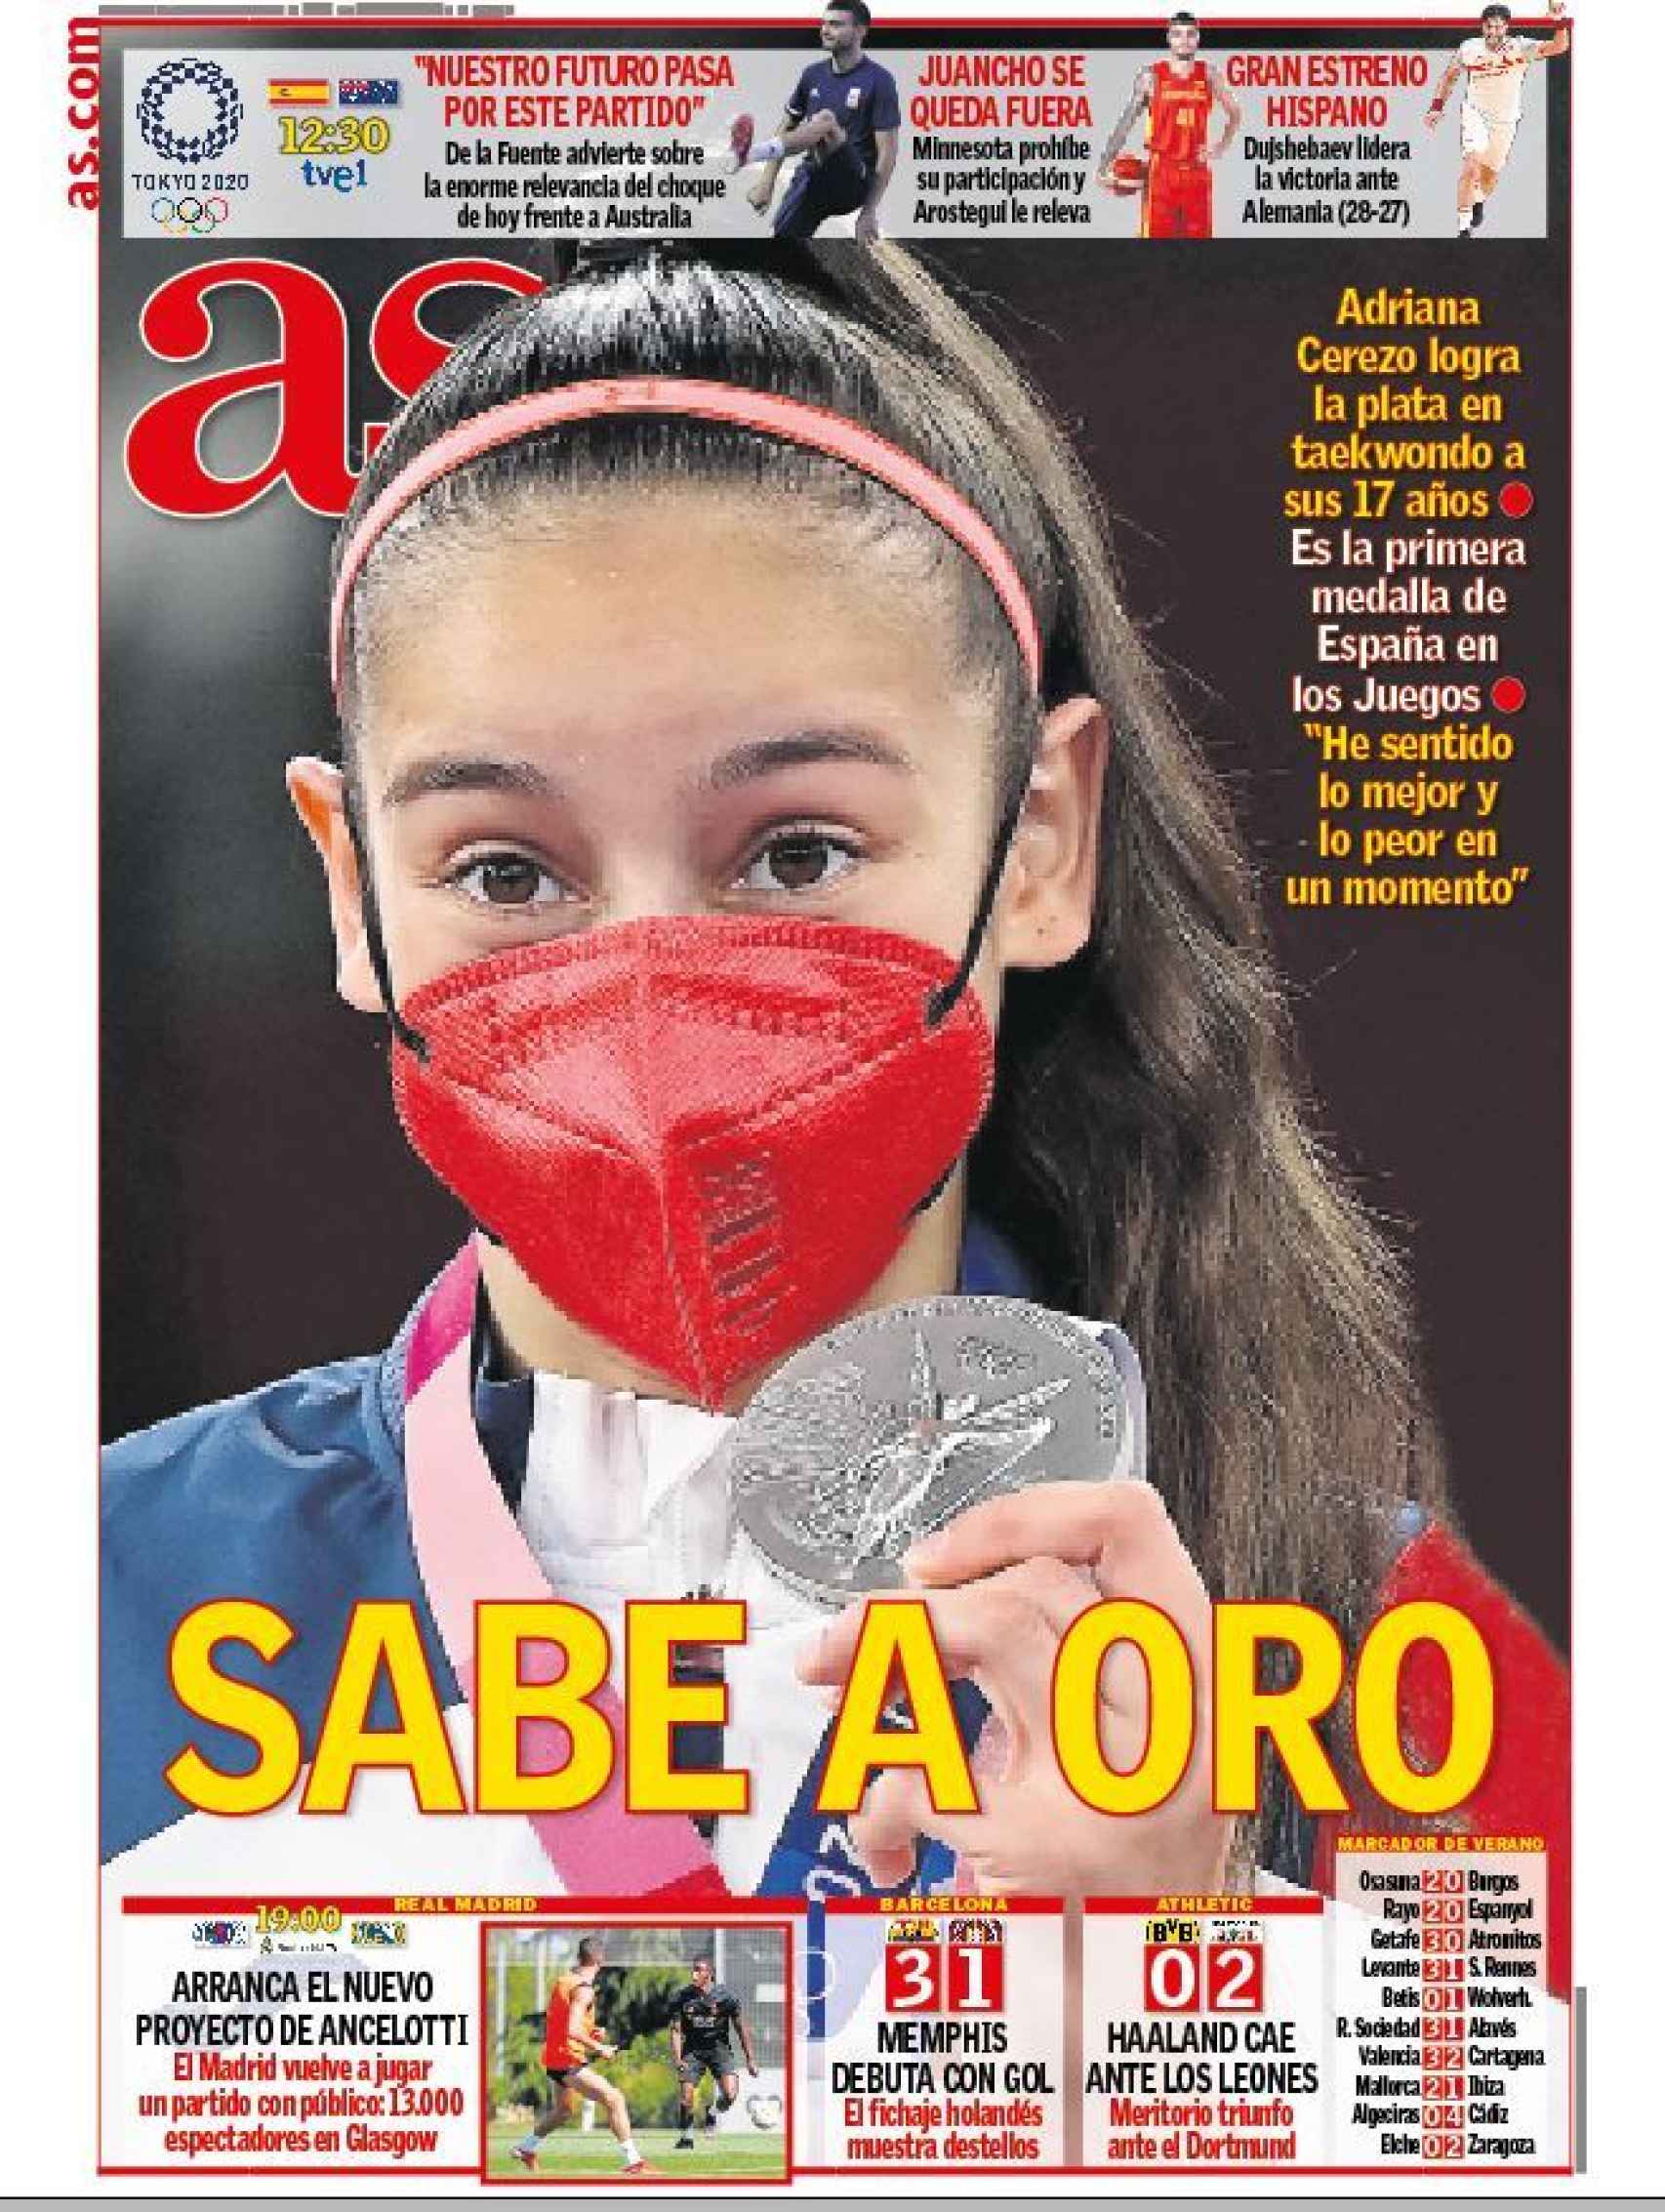 La portada del diario AS (25/07/2021)